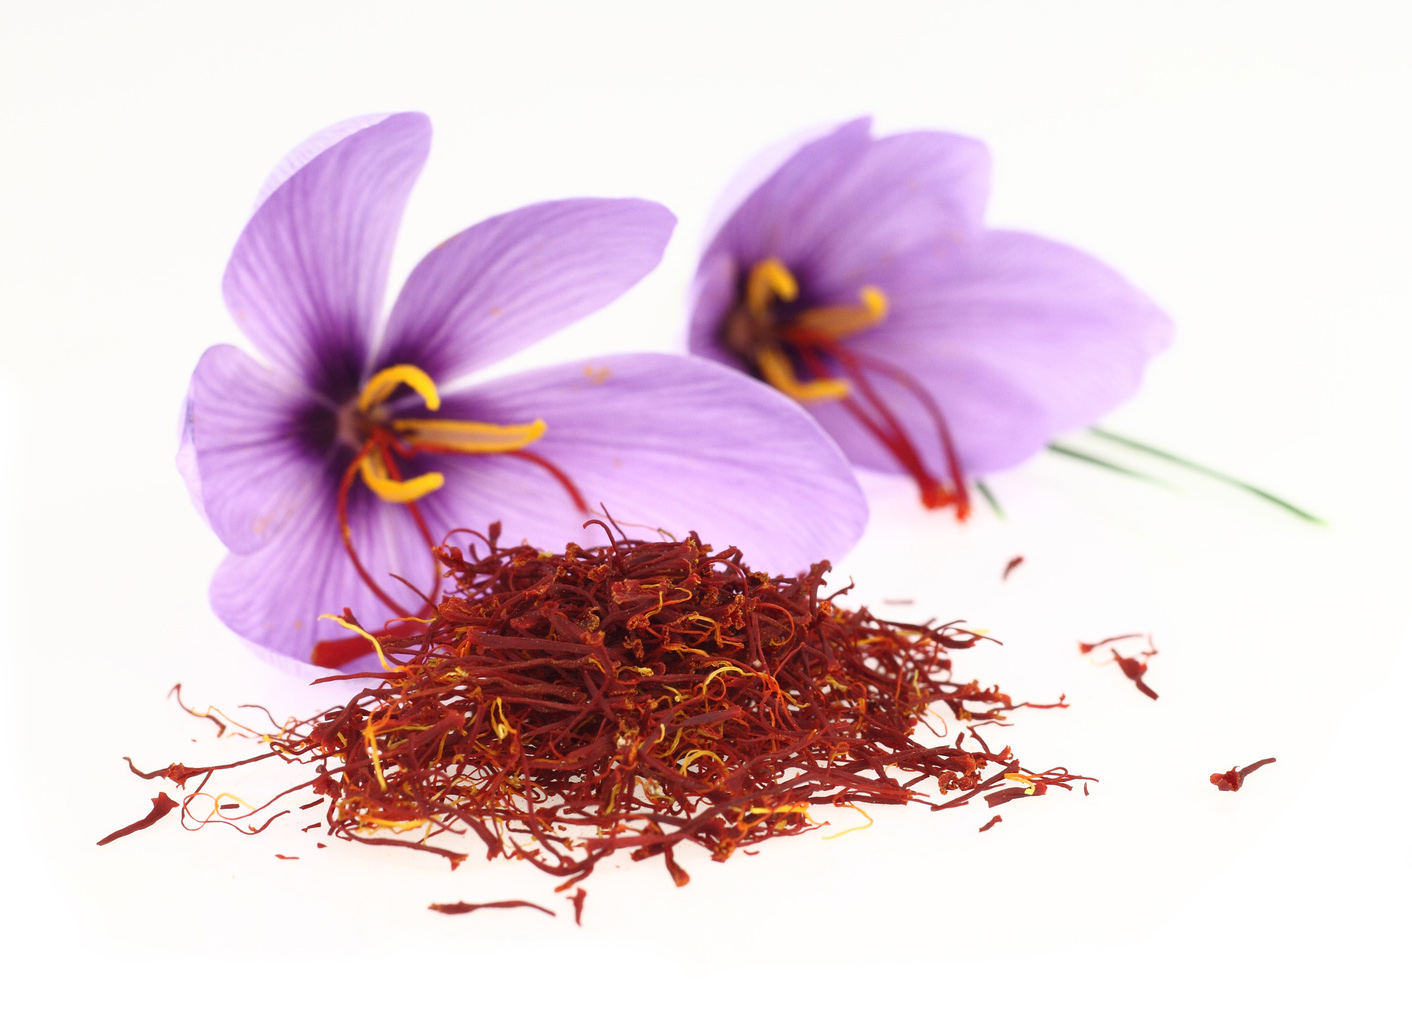 Dried saffron spice and Saffron flowers